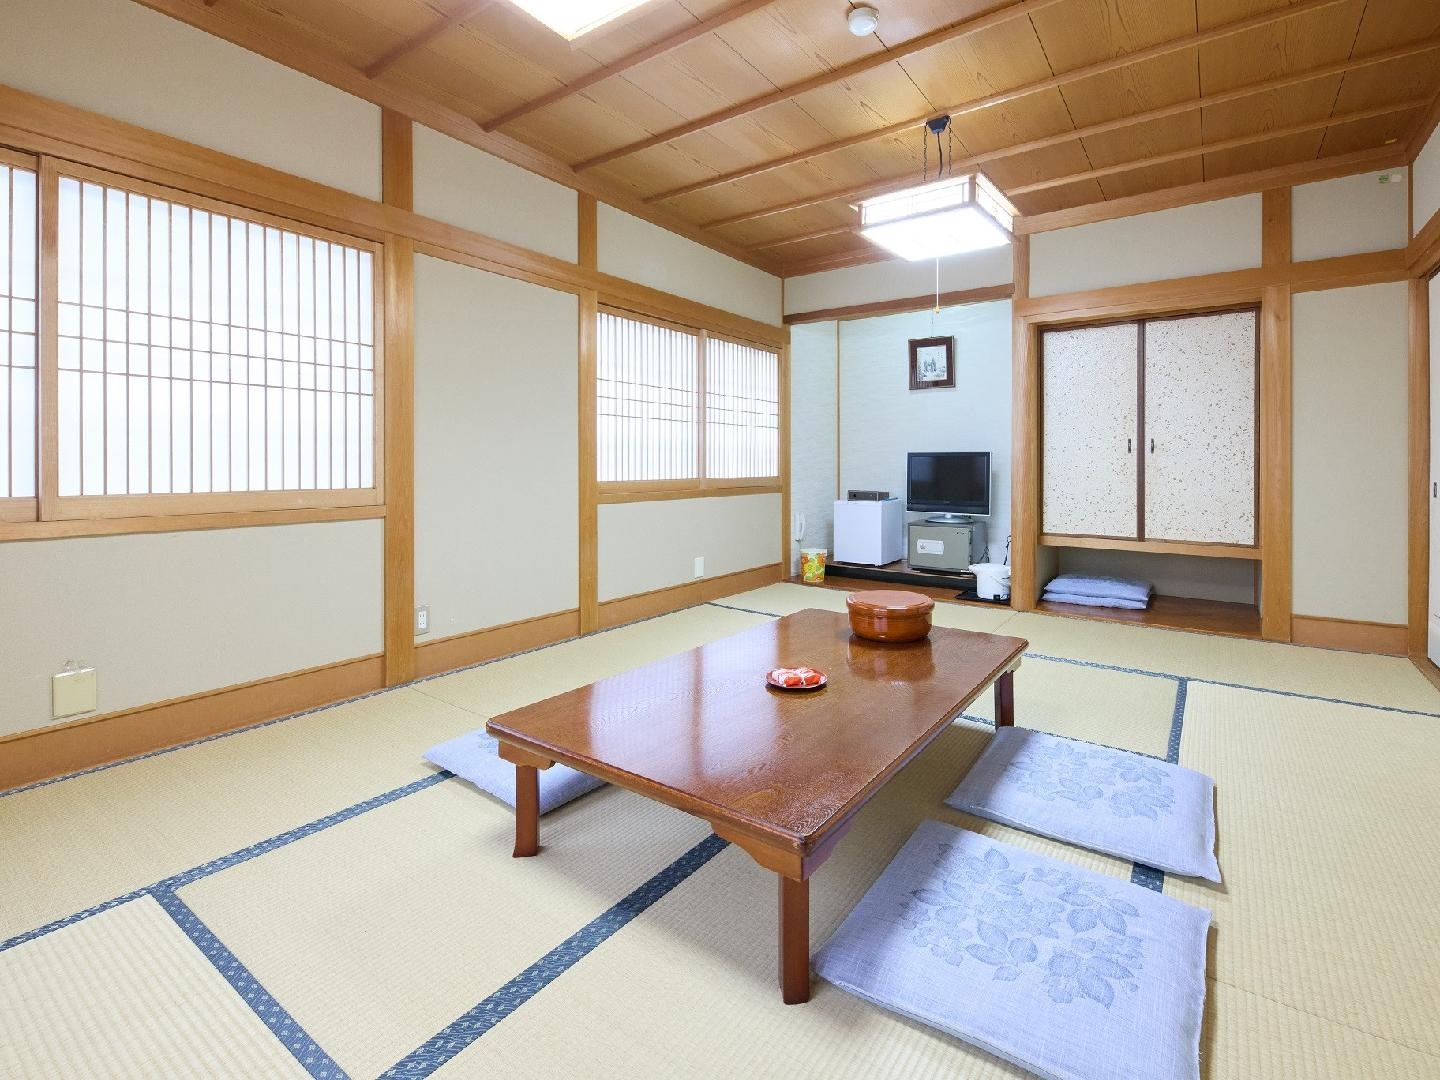 悠闲的日式房间